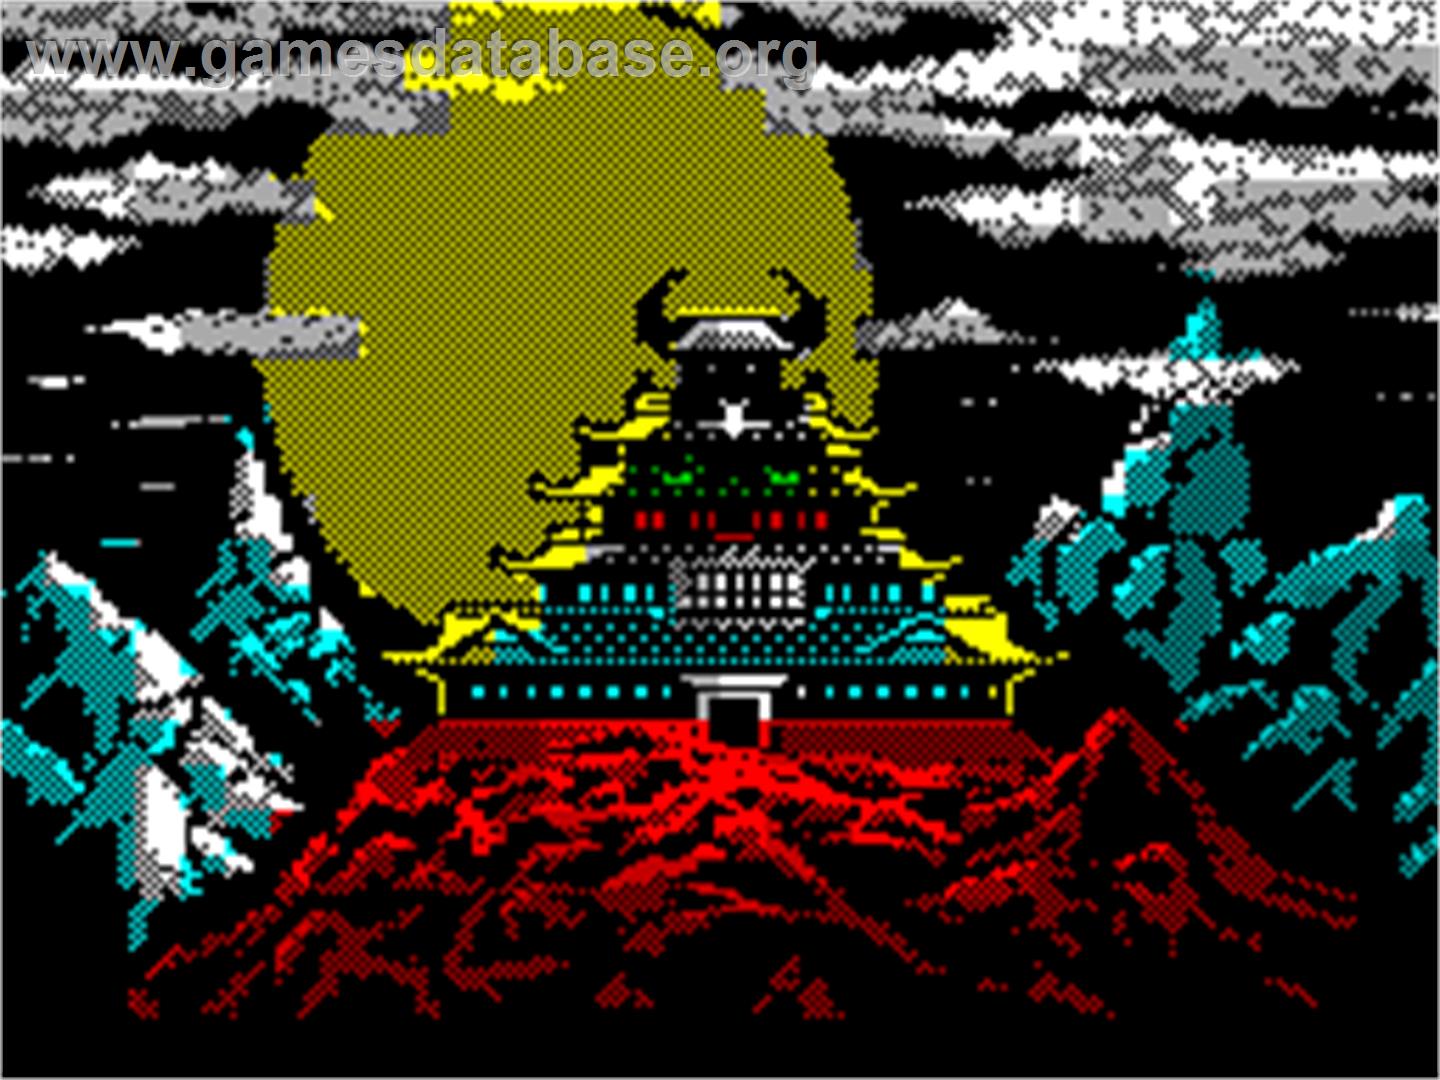 Karateka - Sinclair ZX Spectrum - Artwork - Title Screen